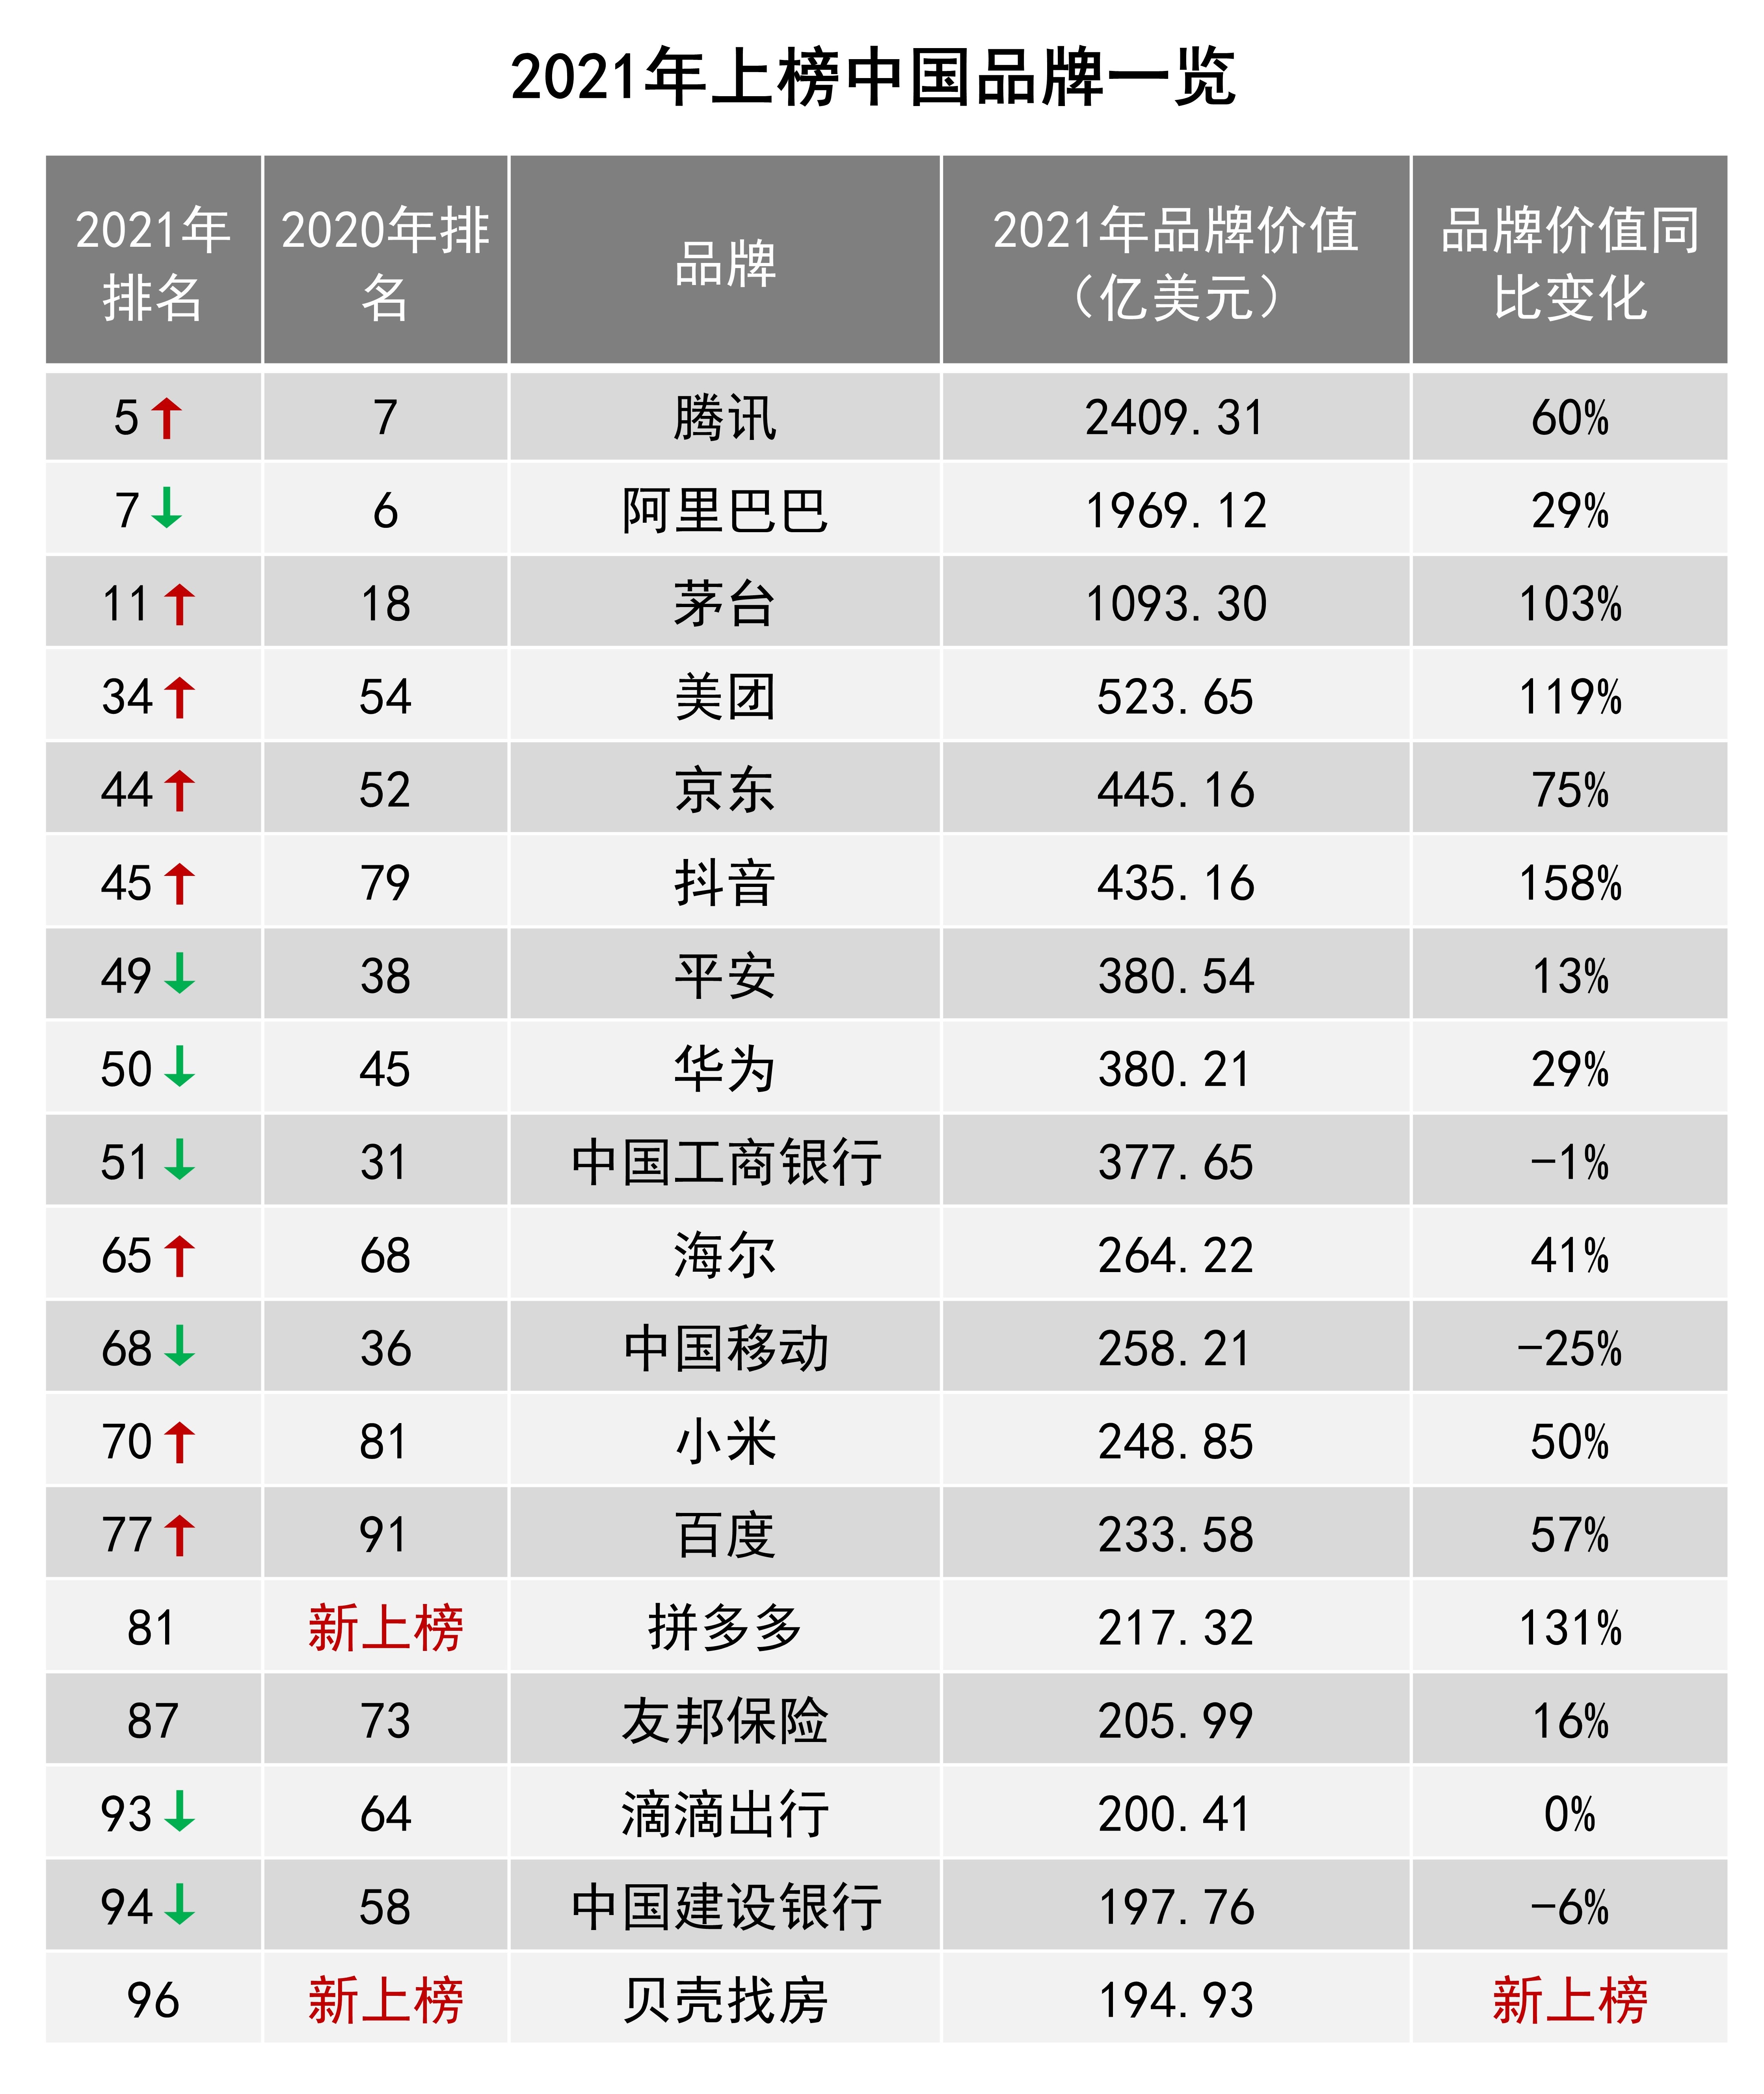 chinese brands ranking